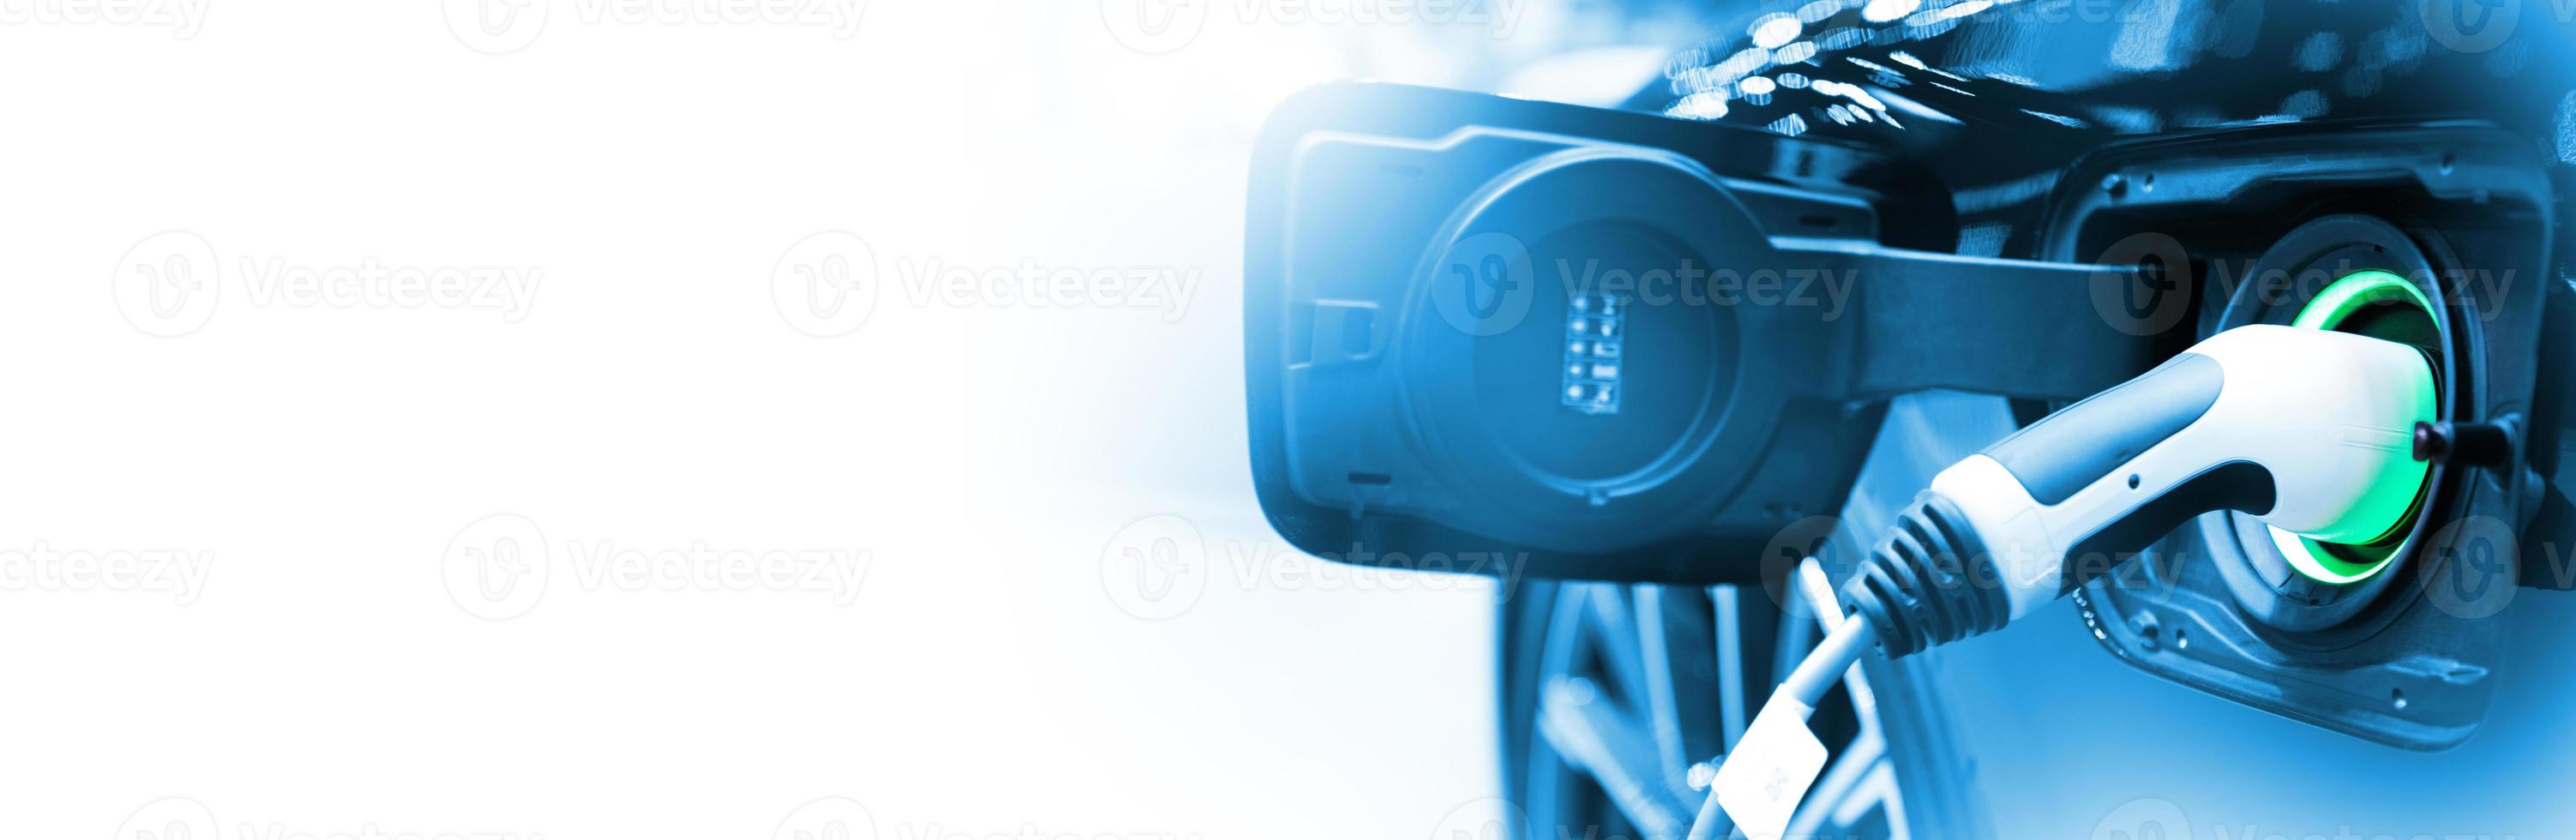 laad ev auto voertuig elektrische batterij op station met blauwe auto op panoramische banner witte achtergrond met kopieerruimte. idee voor een vriendelijke omgeving natuur elektrische energie technologie groen eco concept. foto